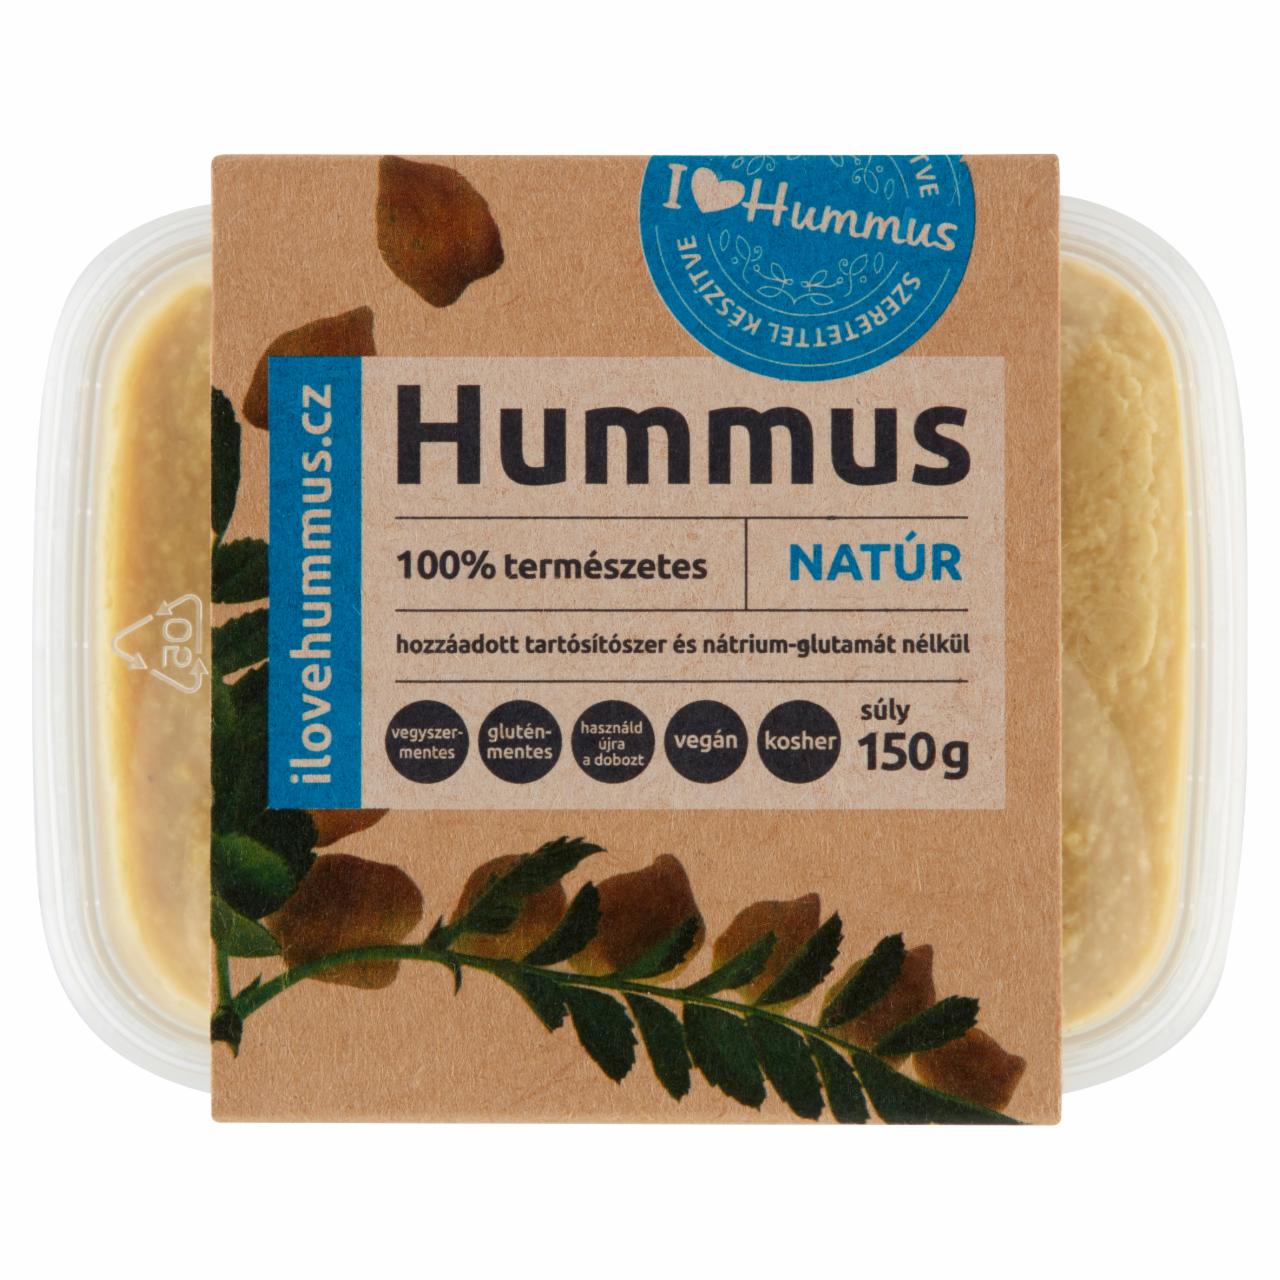 Képek - I love Hummus - hummusz natúr 150 g